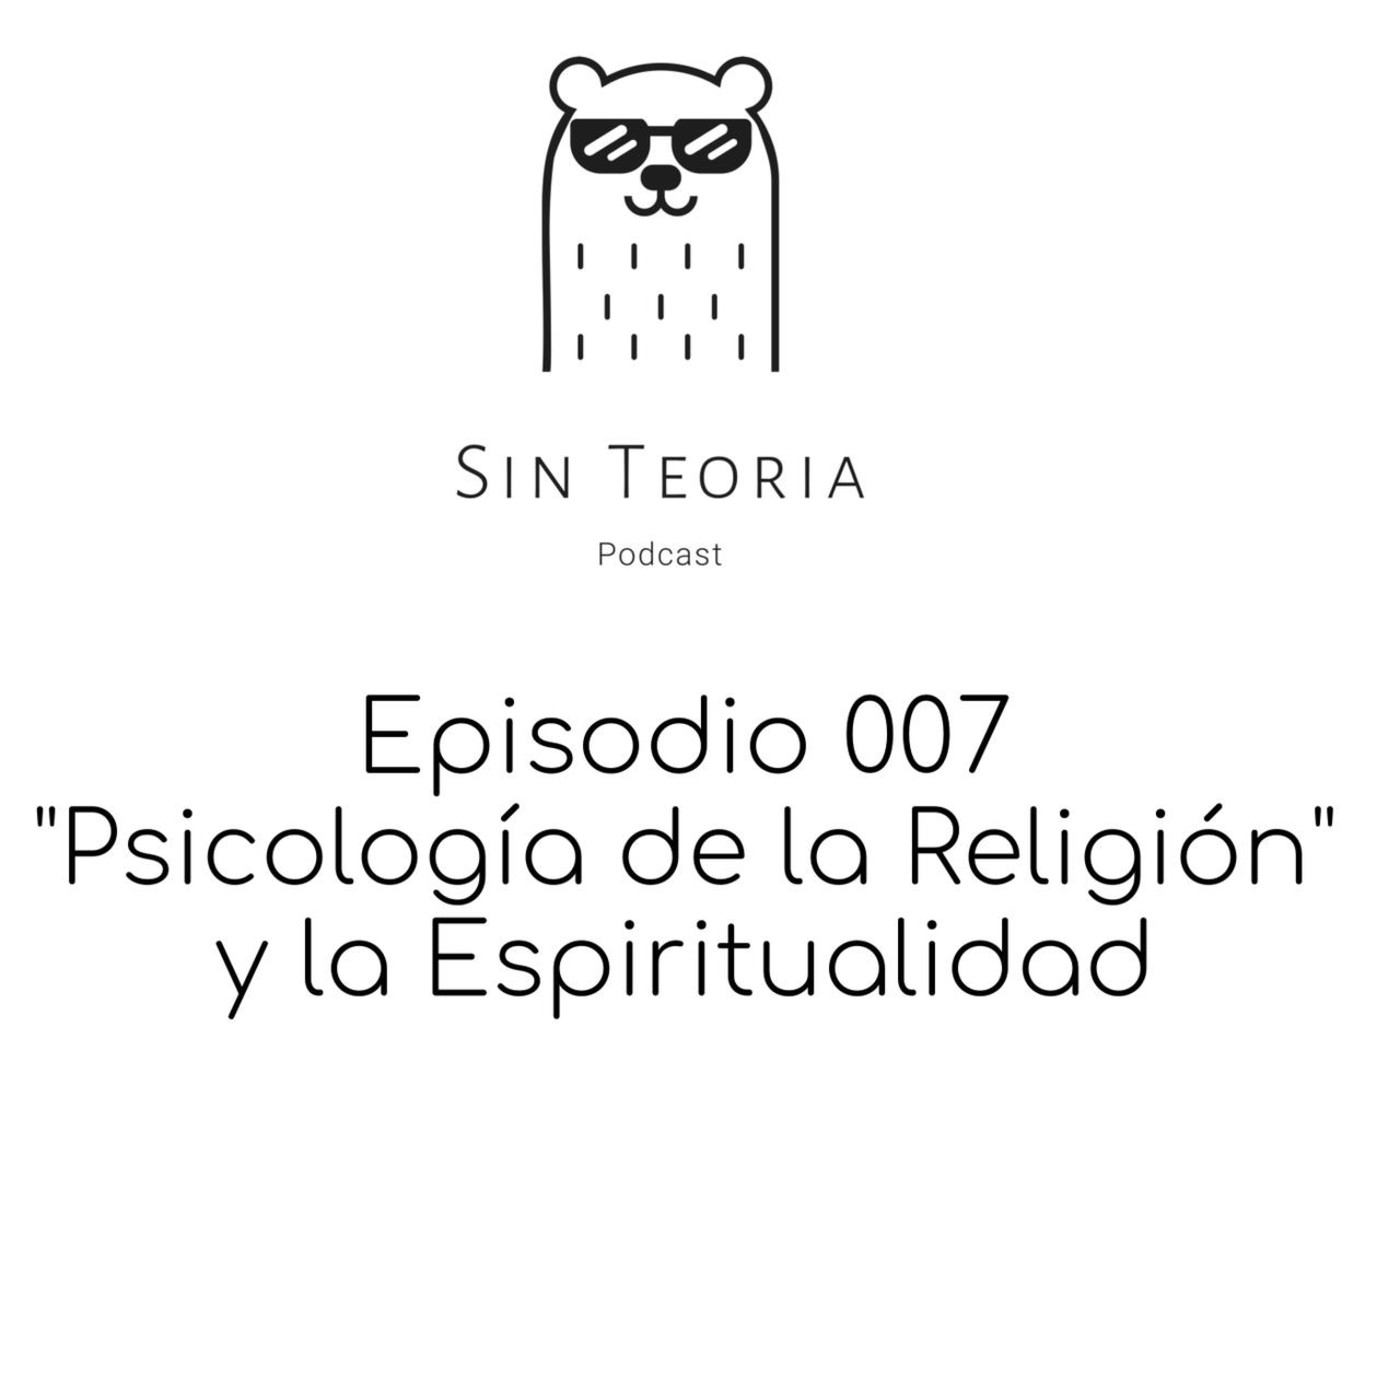 Episodio 007: ”Psicología de la Religión y la Espiritualidad”